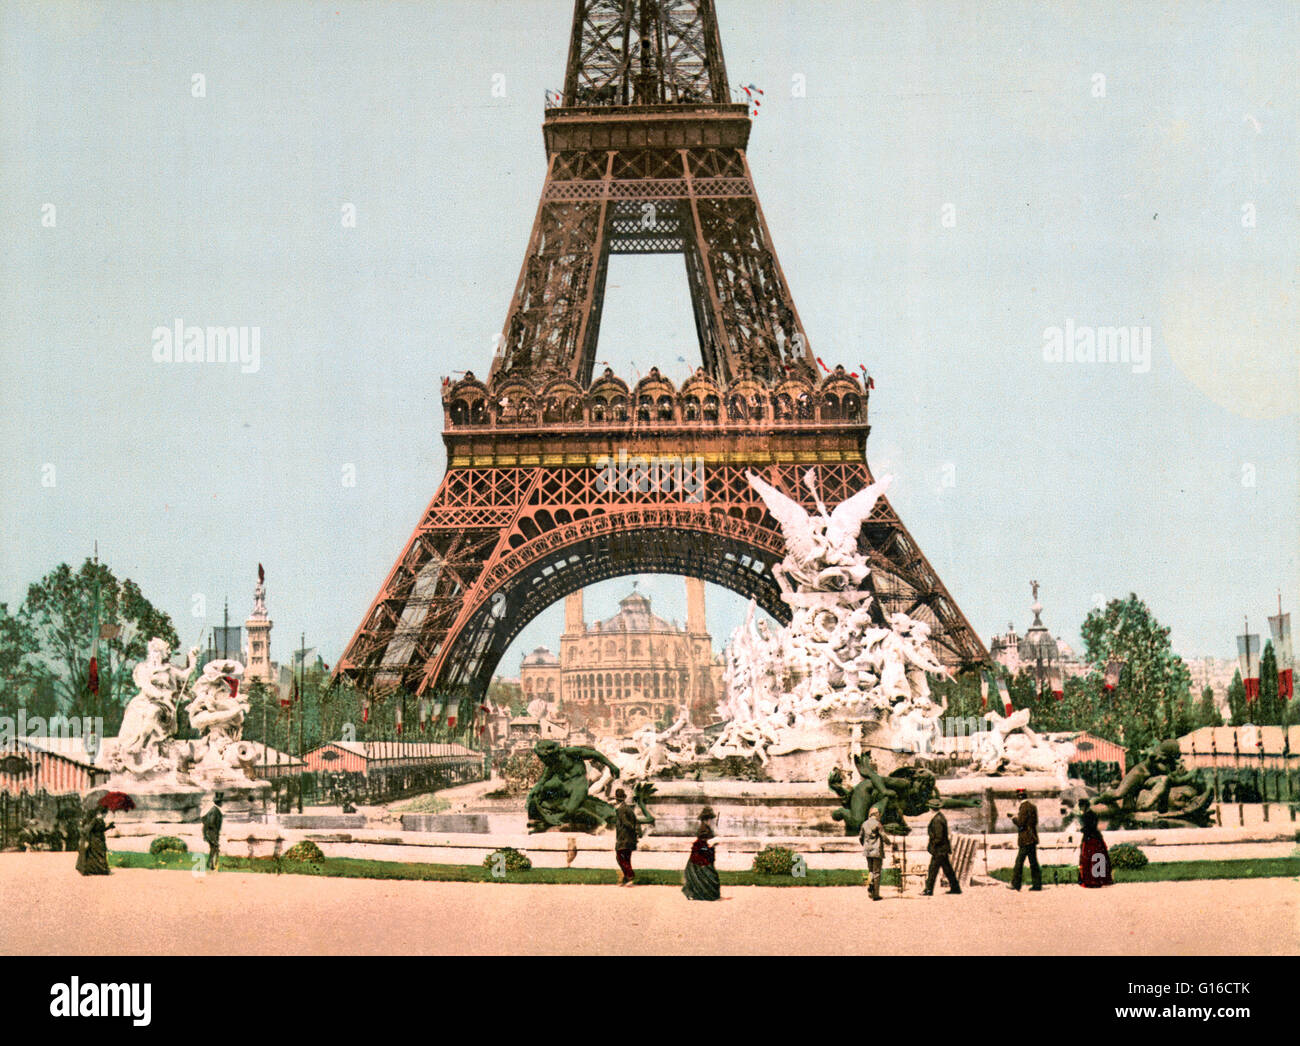 La Torre Eiffel e la fontana. La Exposition Universelle di 1900 era una fiera mondiale tenutasi a Parigi, Francia, per celebrare i successi del secolo scorso e di accelerare lo sviluppo nel successivo. La Torre Eiffel (La Tour Eiffel) è un reticolo di ferro il traino Foto Stock